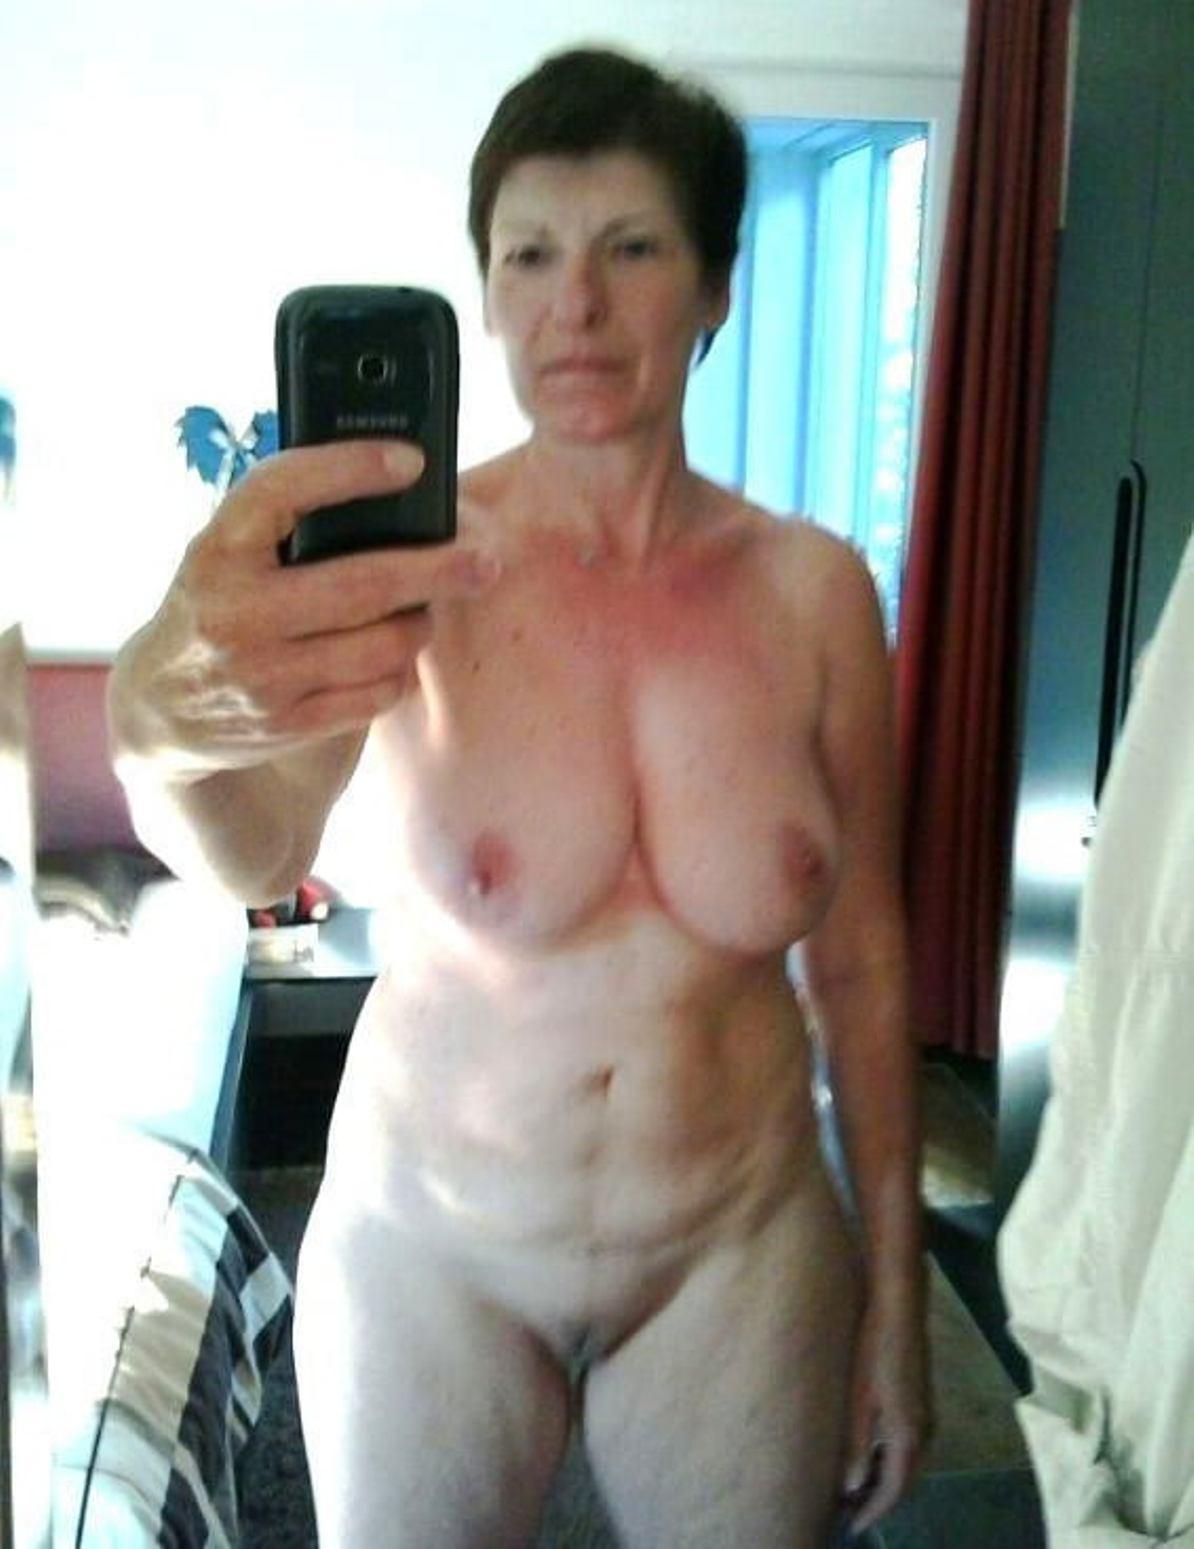 galleries milf selfie nude women porn scene picture